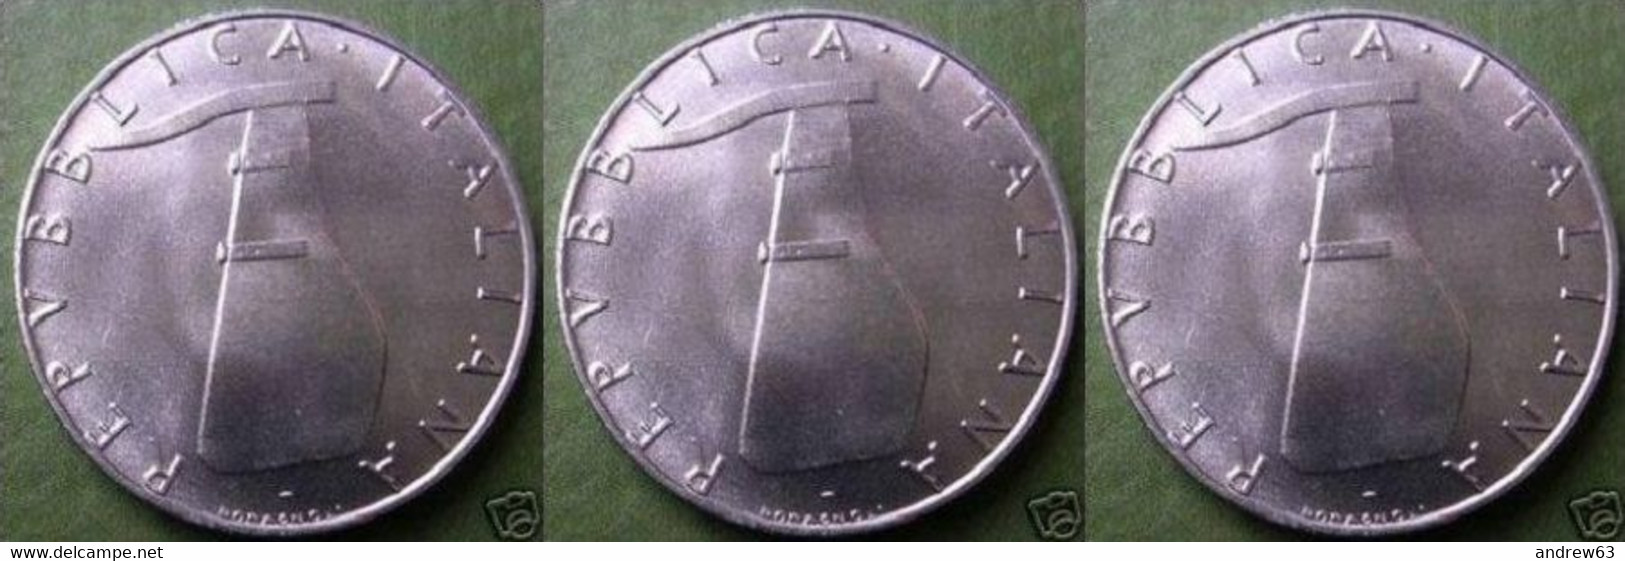 ITALIA - Lire 5 1973 - FDC/Unc Da Rotolino/from Roll 3 Monete/3 Coins - 5 Lire